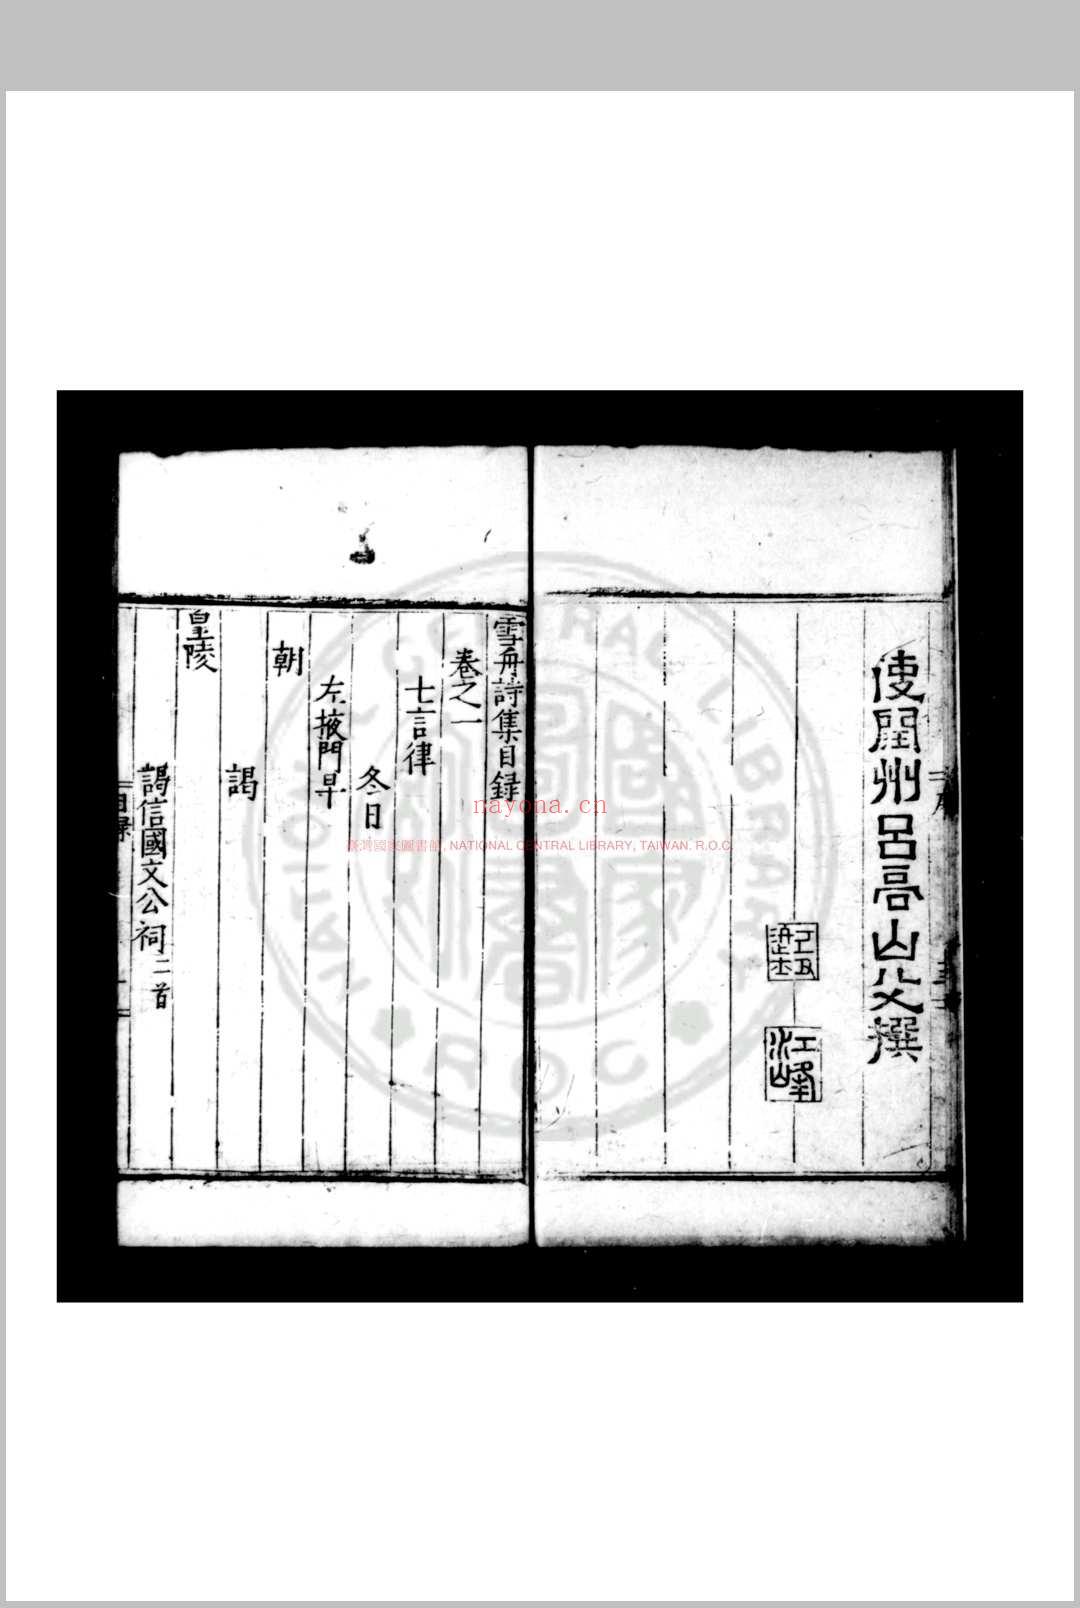 雪舟诗集 (明)贾雪舟撰 明嘉靖间(1522-1566)维扬贾氏家刊本